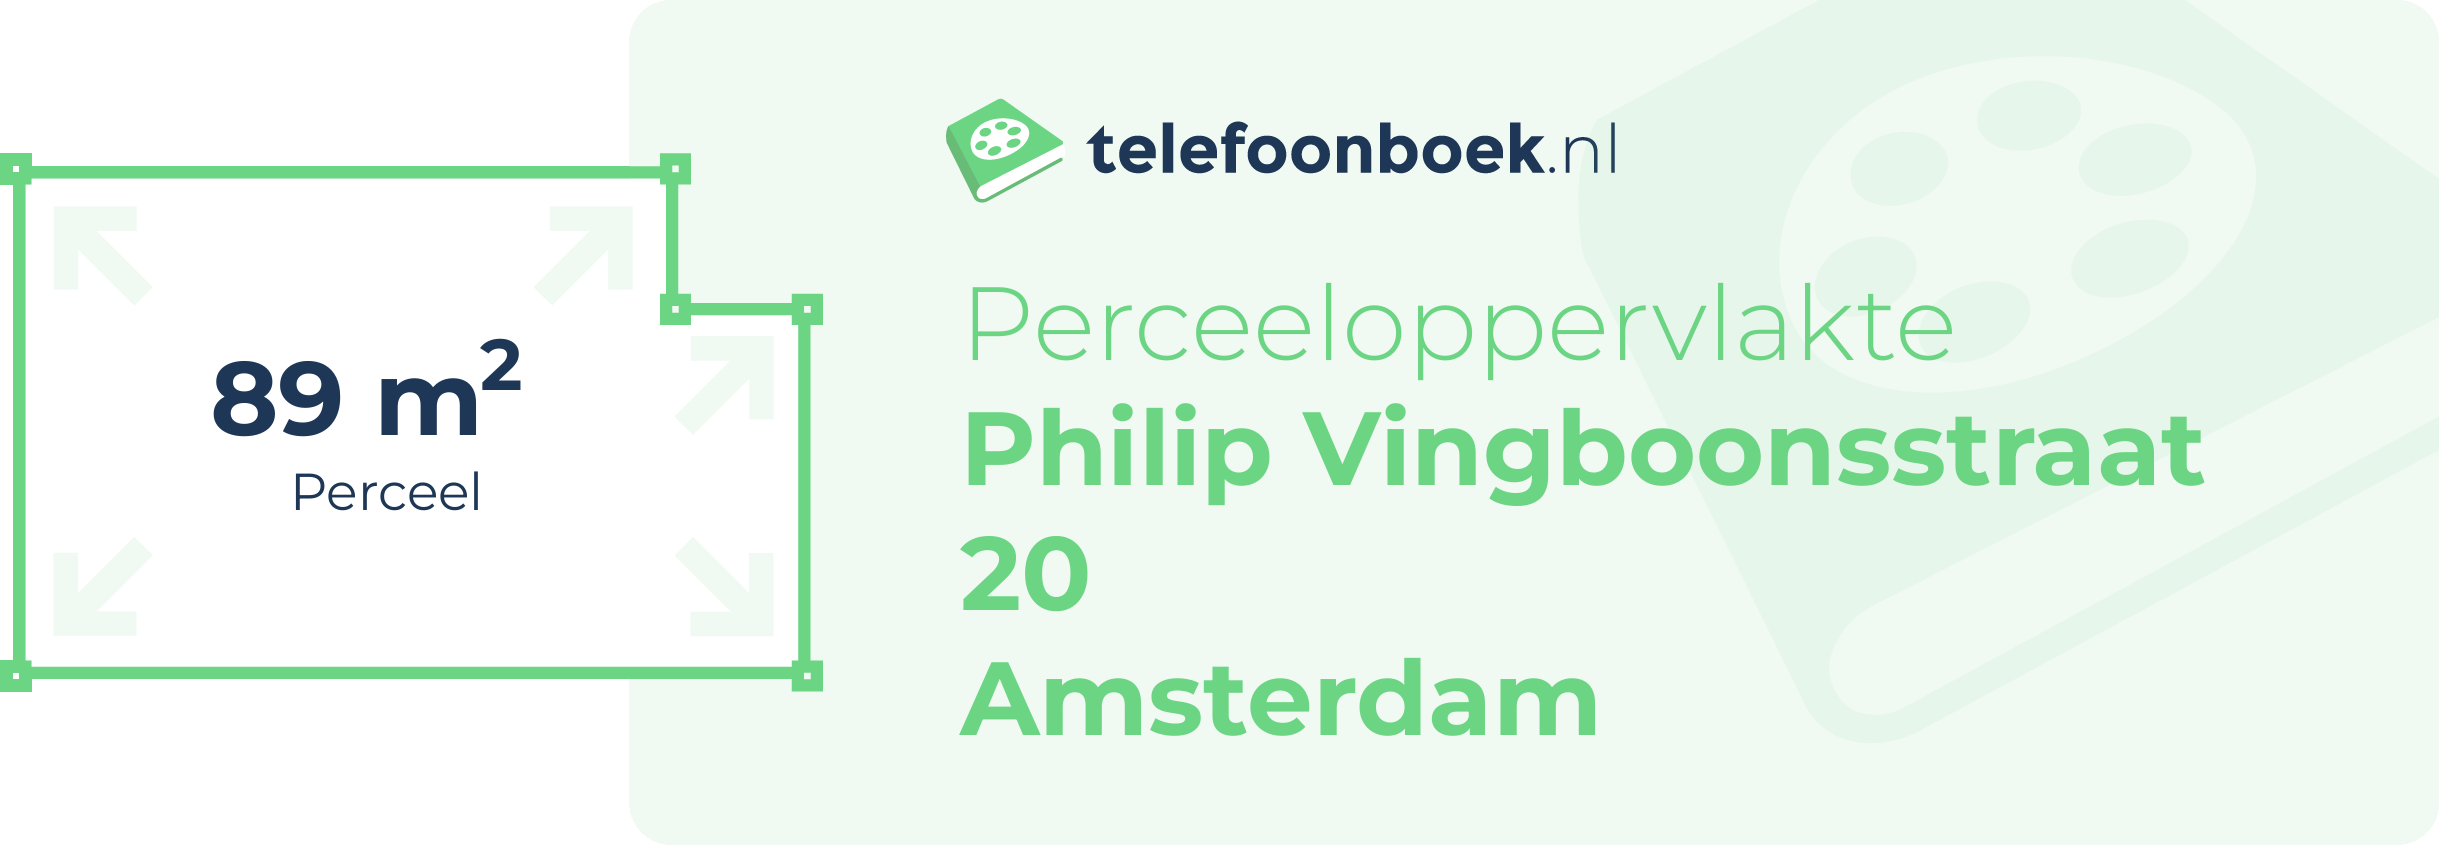 Perceeloppervlakte Philip Vingboonsstraat 20 Amsterdam